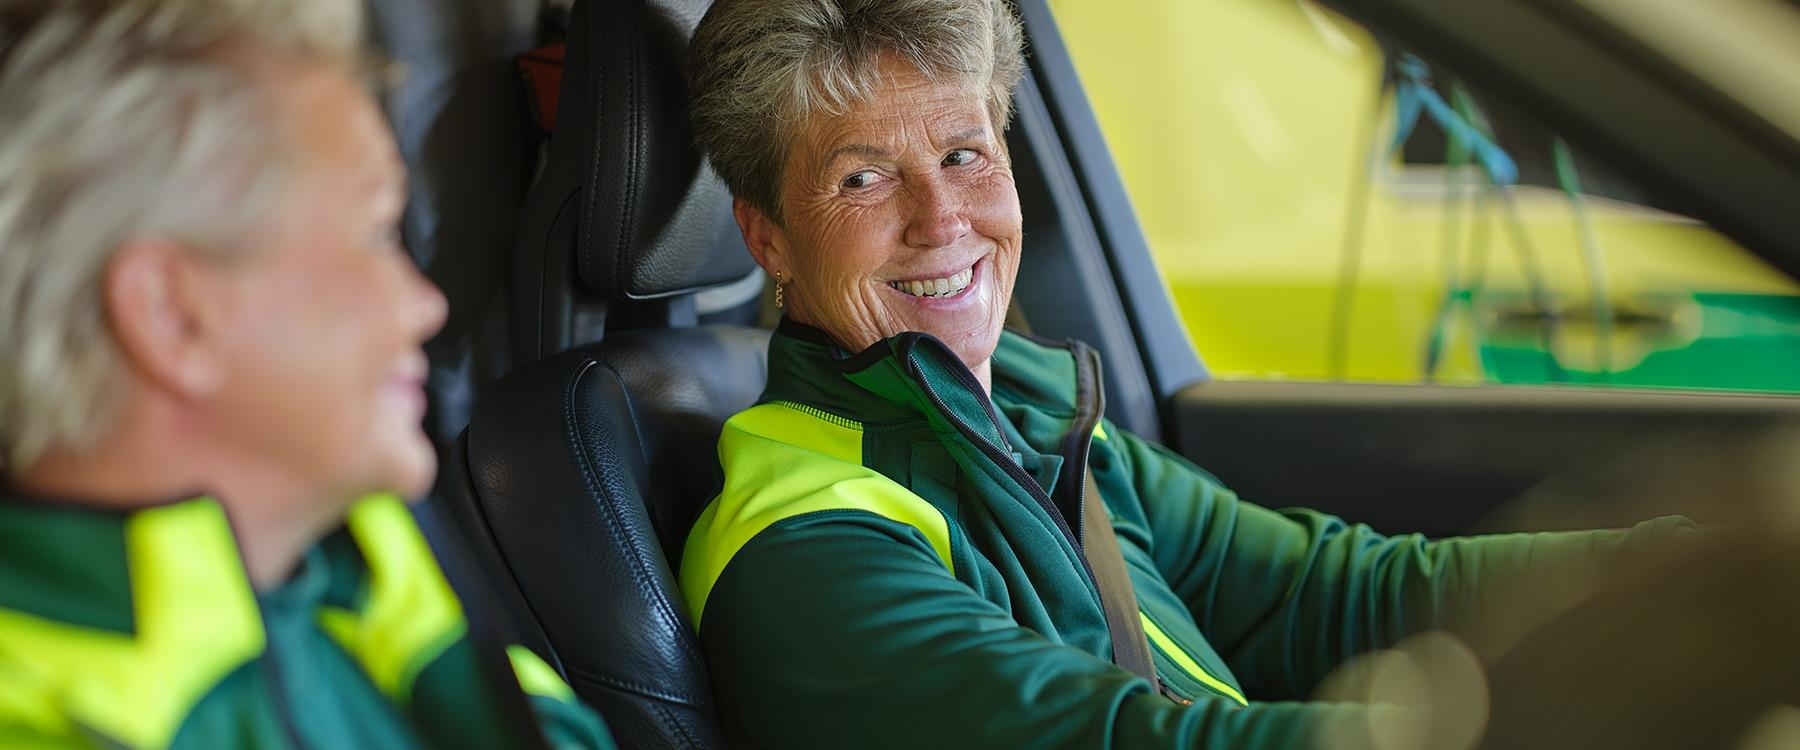 Female ambulance staff driving ambulance